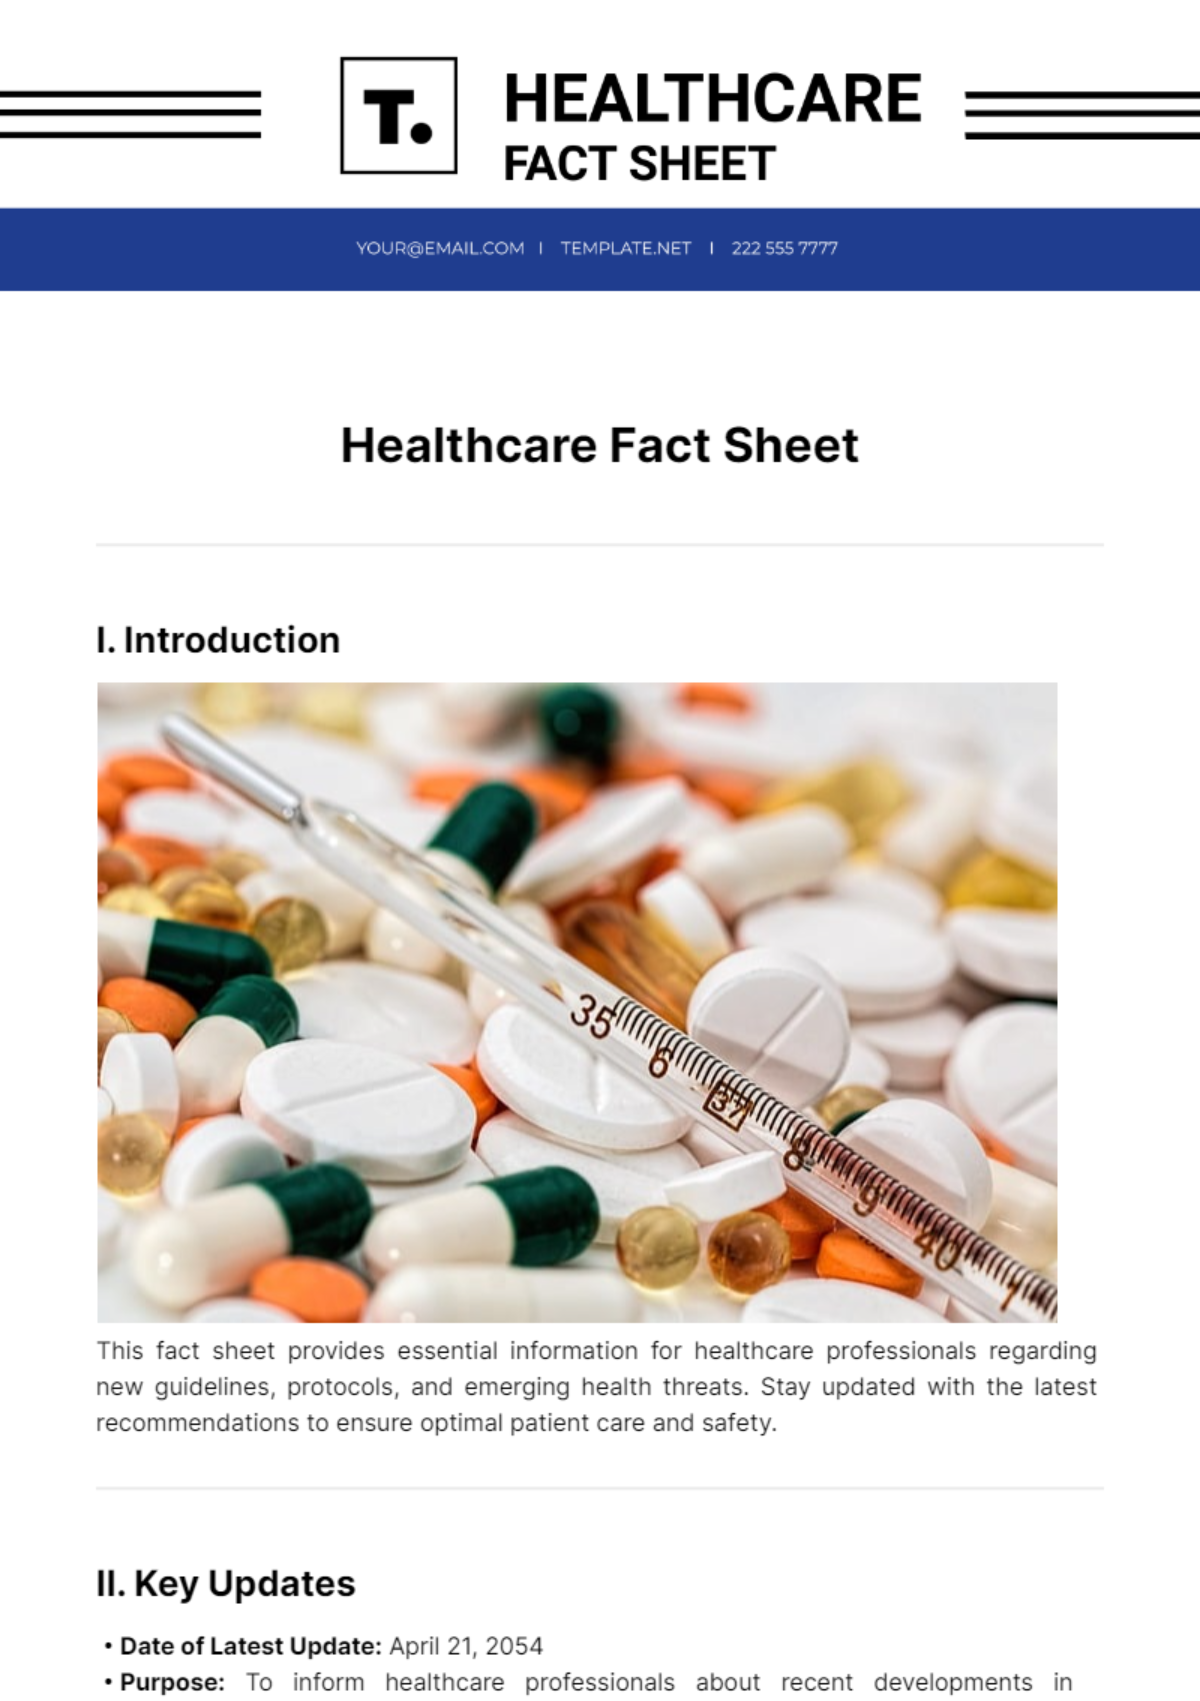 Healthcare Fact Sheet Template